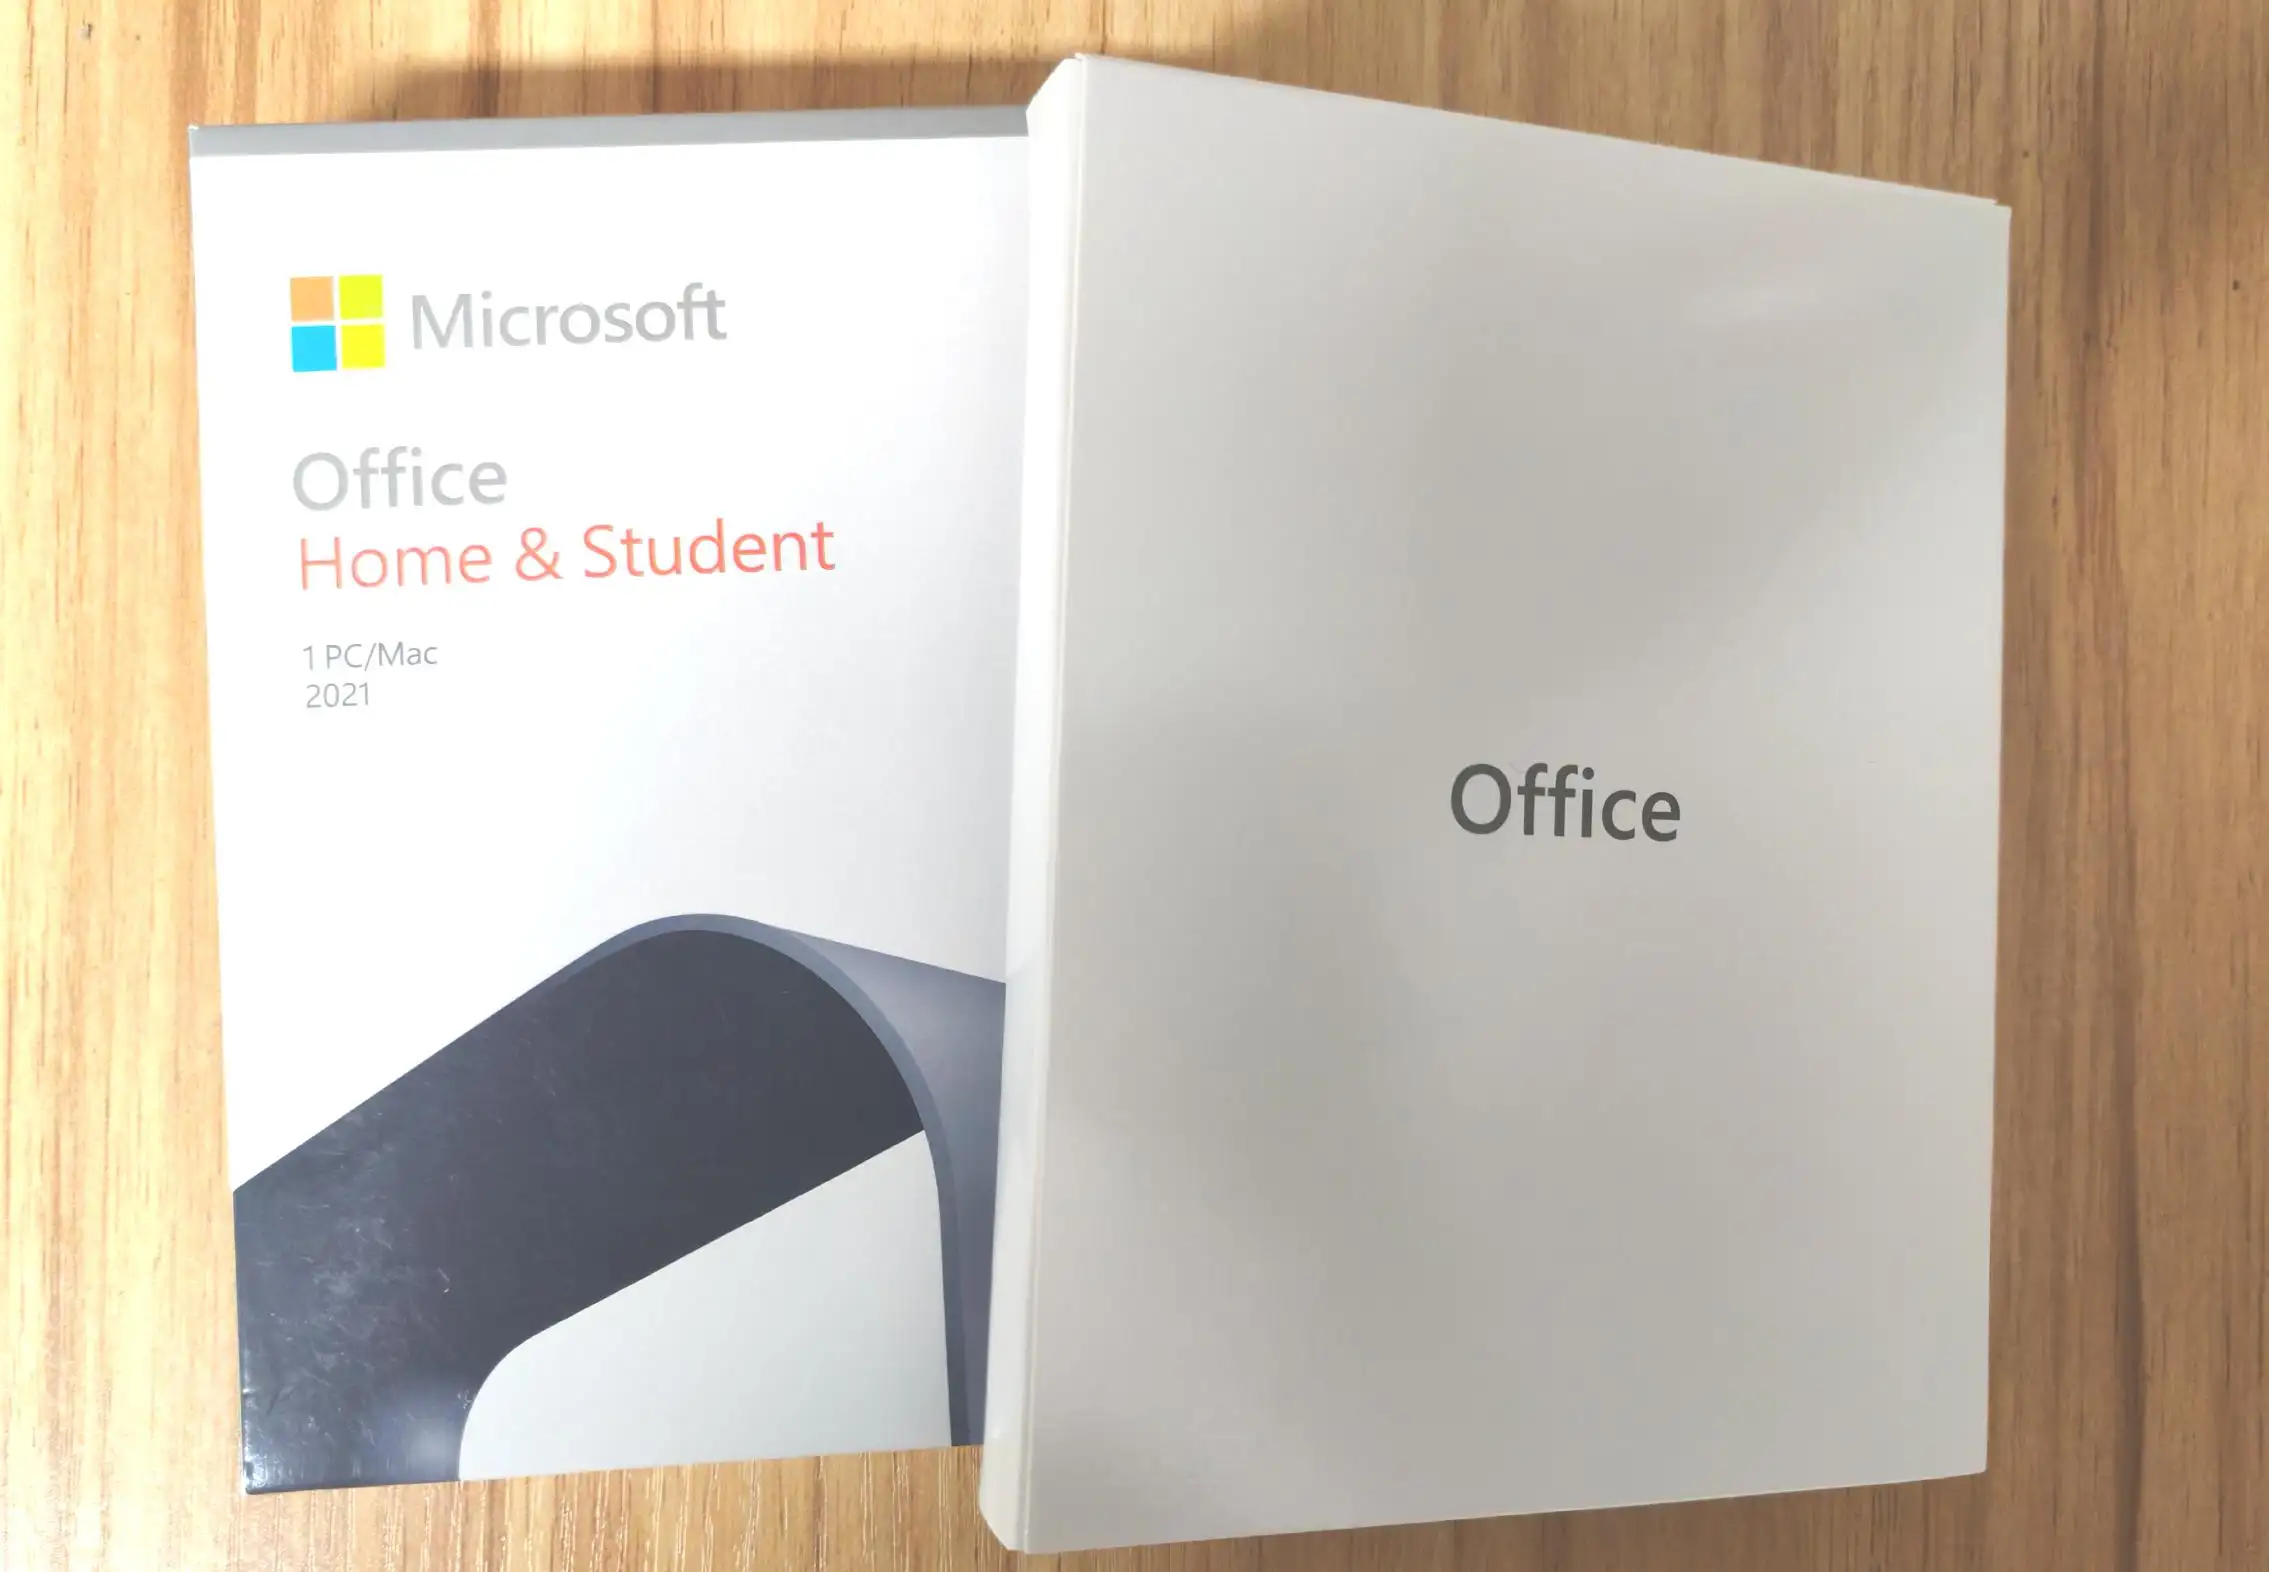 מפתח OEM קמעונאי מקצועי של Office 2019 ביתי סטודנט 1PC Mac, הפעלה של 100%.